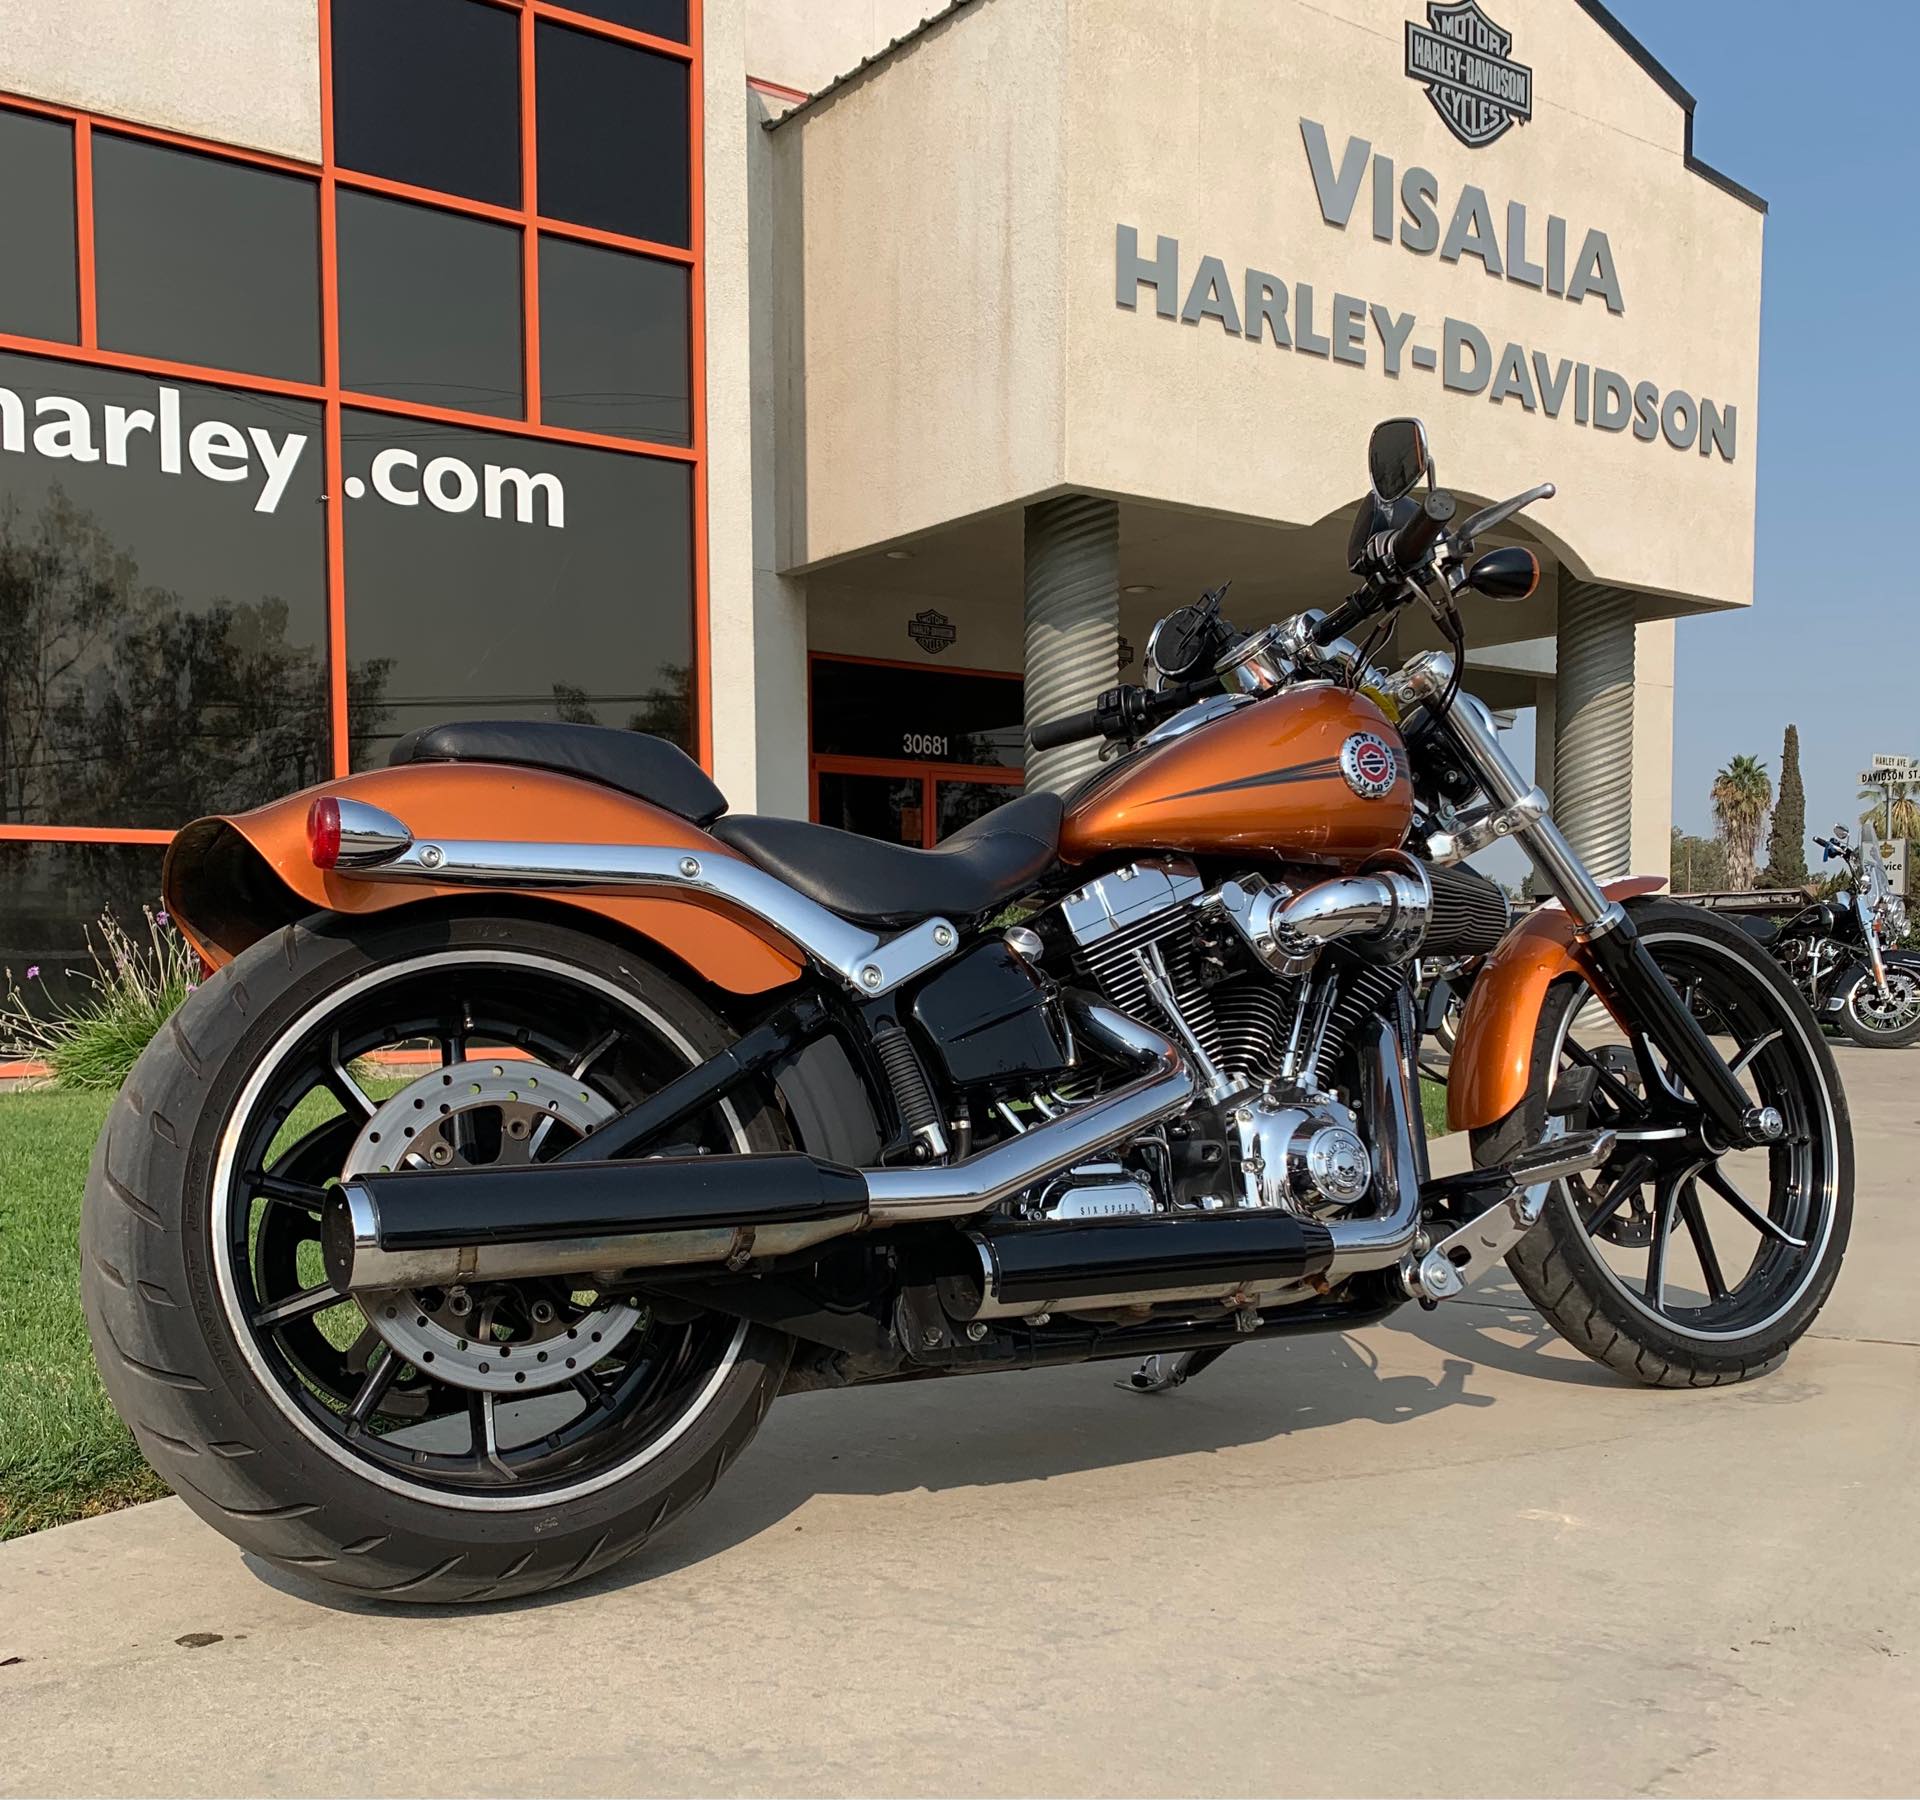 2014 Harley-Davidson Softail Breakout at Visalia Harley-Davidson